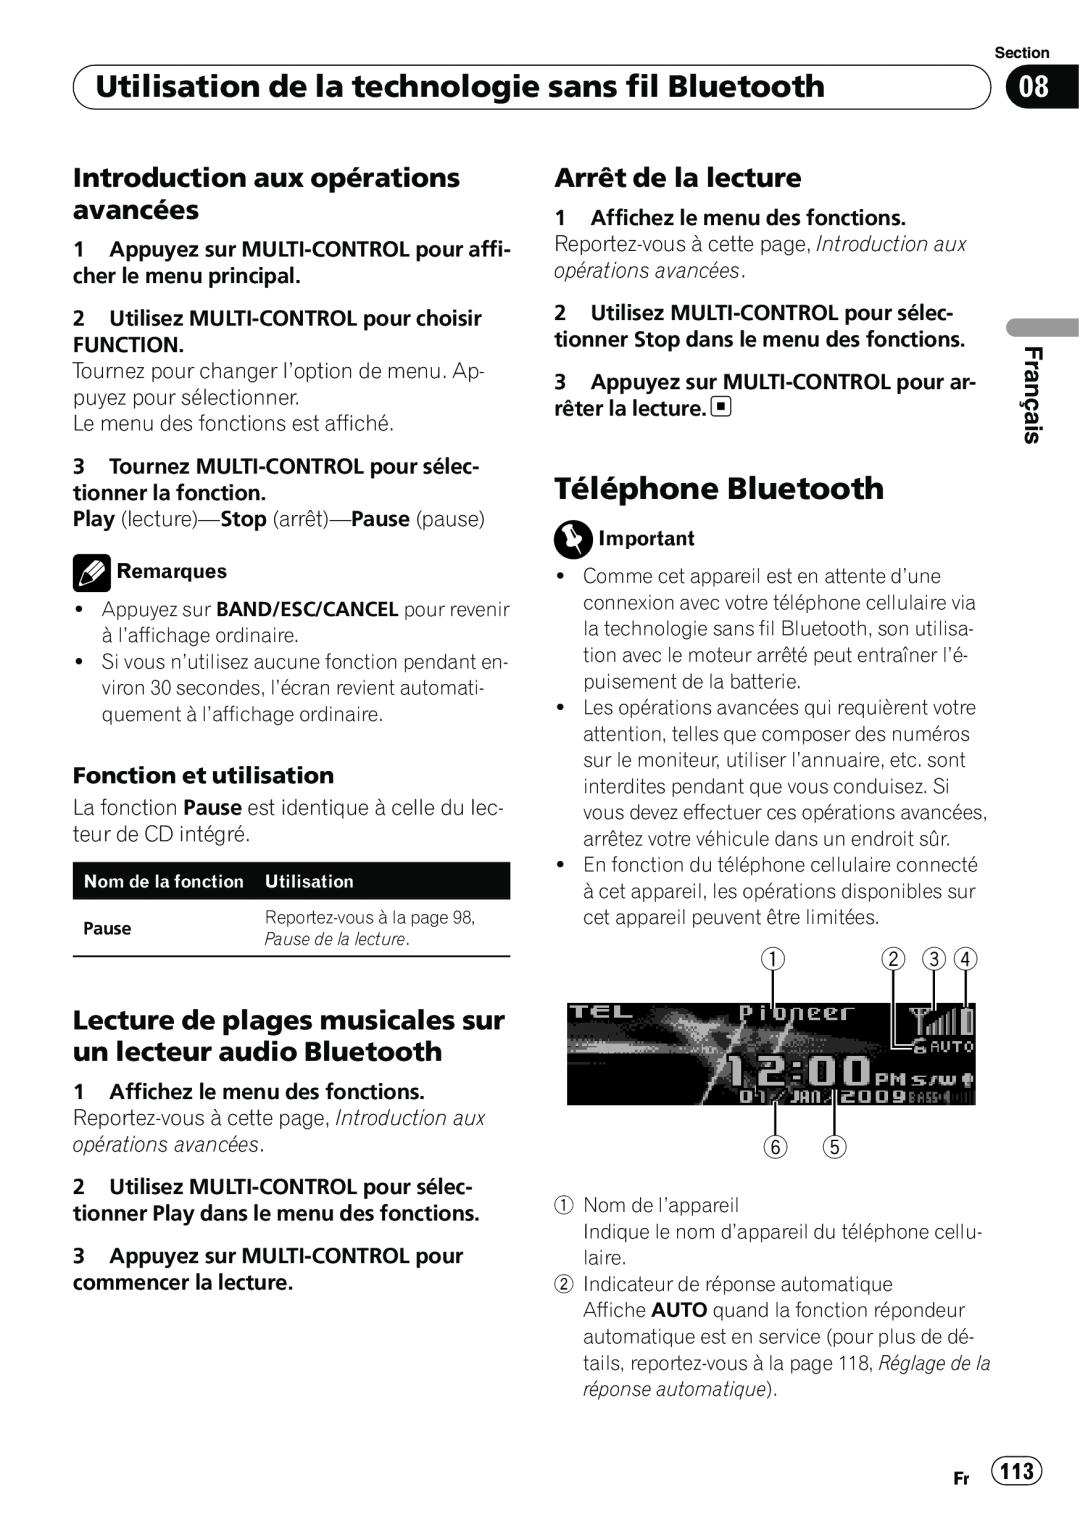 Pioneer DEH-P7100BT Téléphone Bluetooth, Introduction aux opérations avancées, Arrêt de la lecture, Français 